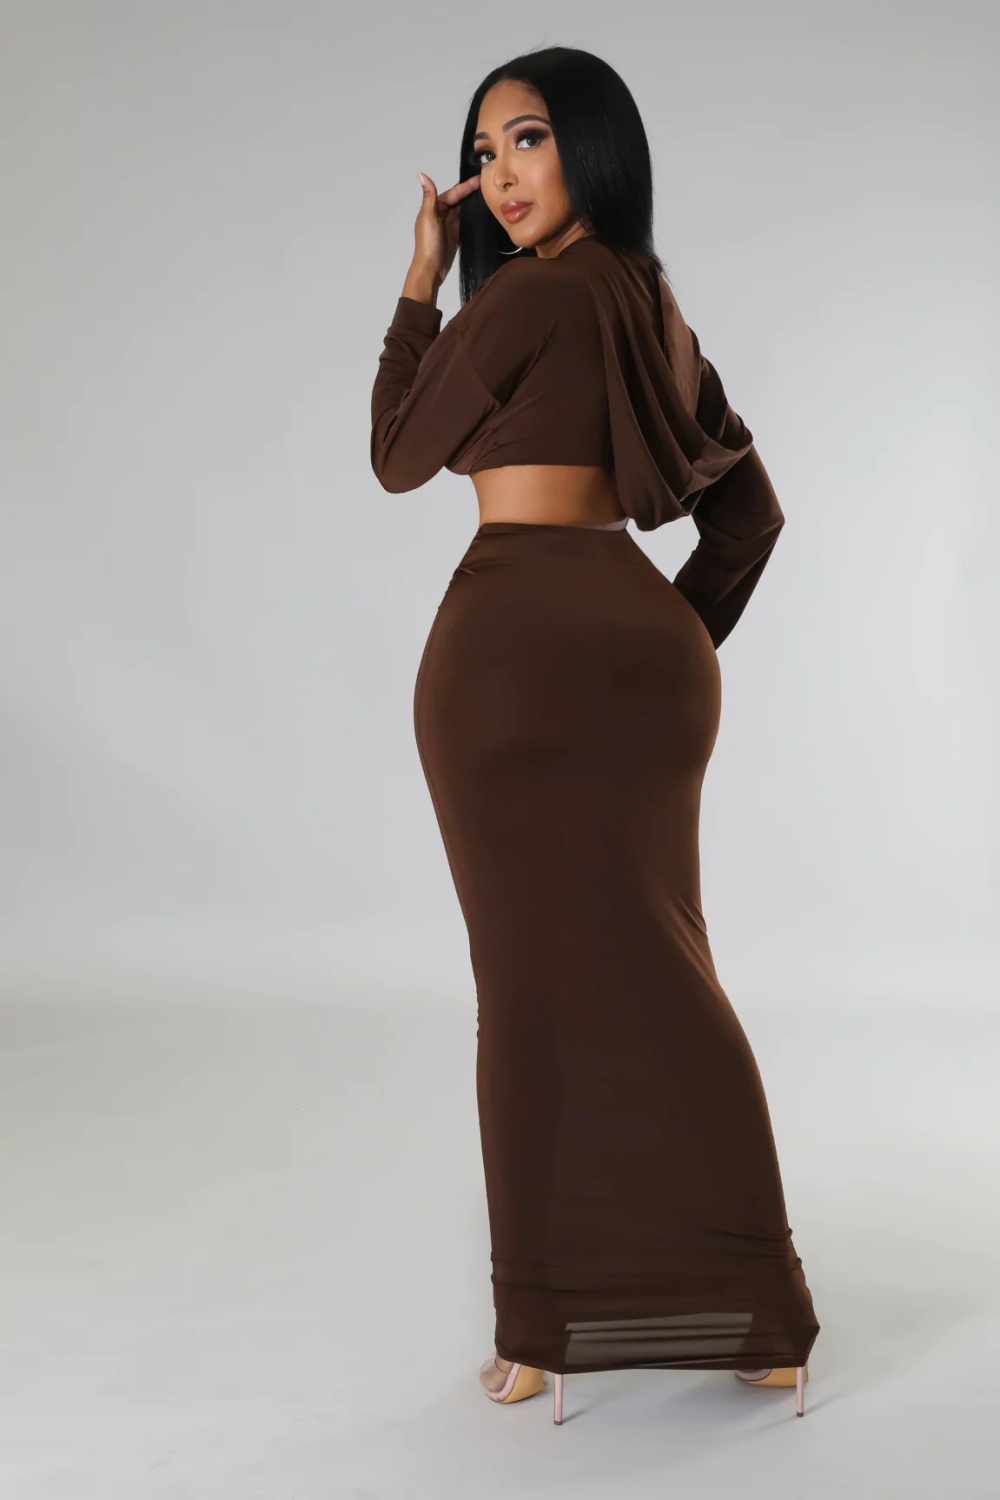 Hooded European style skirt high waist tops 2pcs set